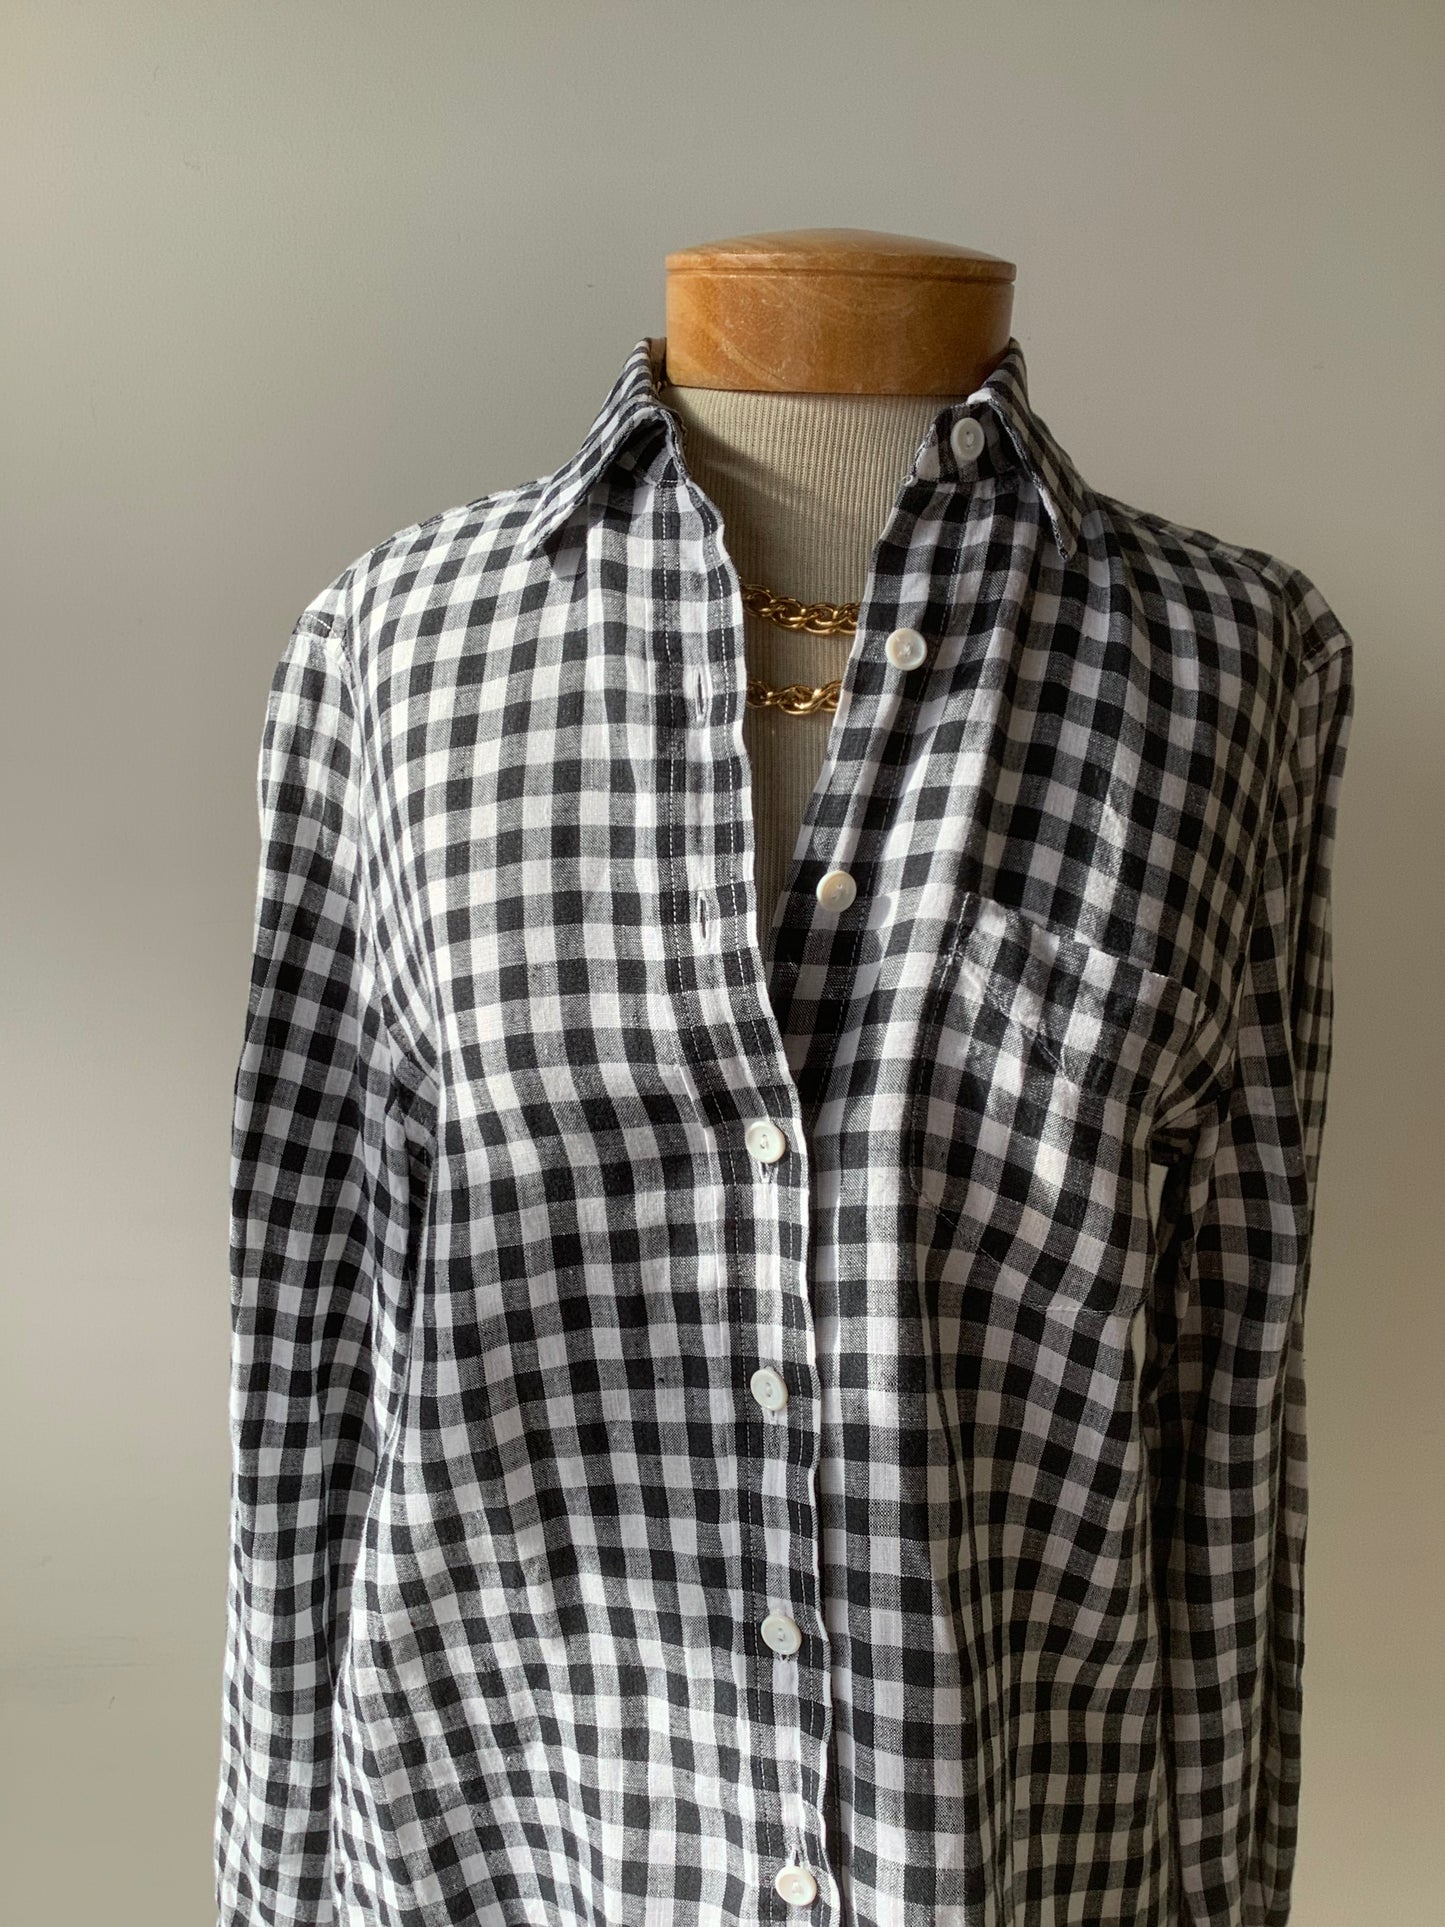 Black and white gingham linen shirt